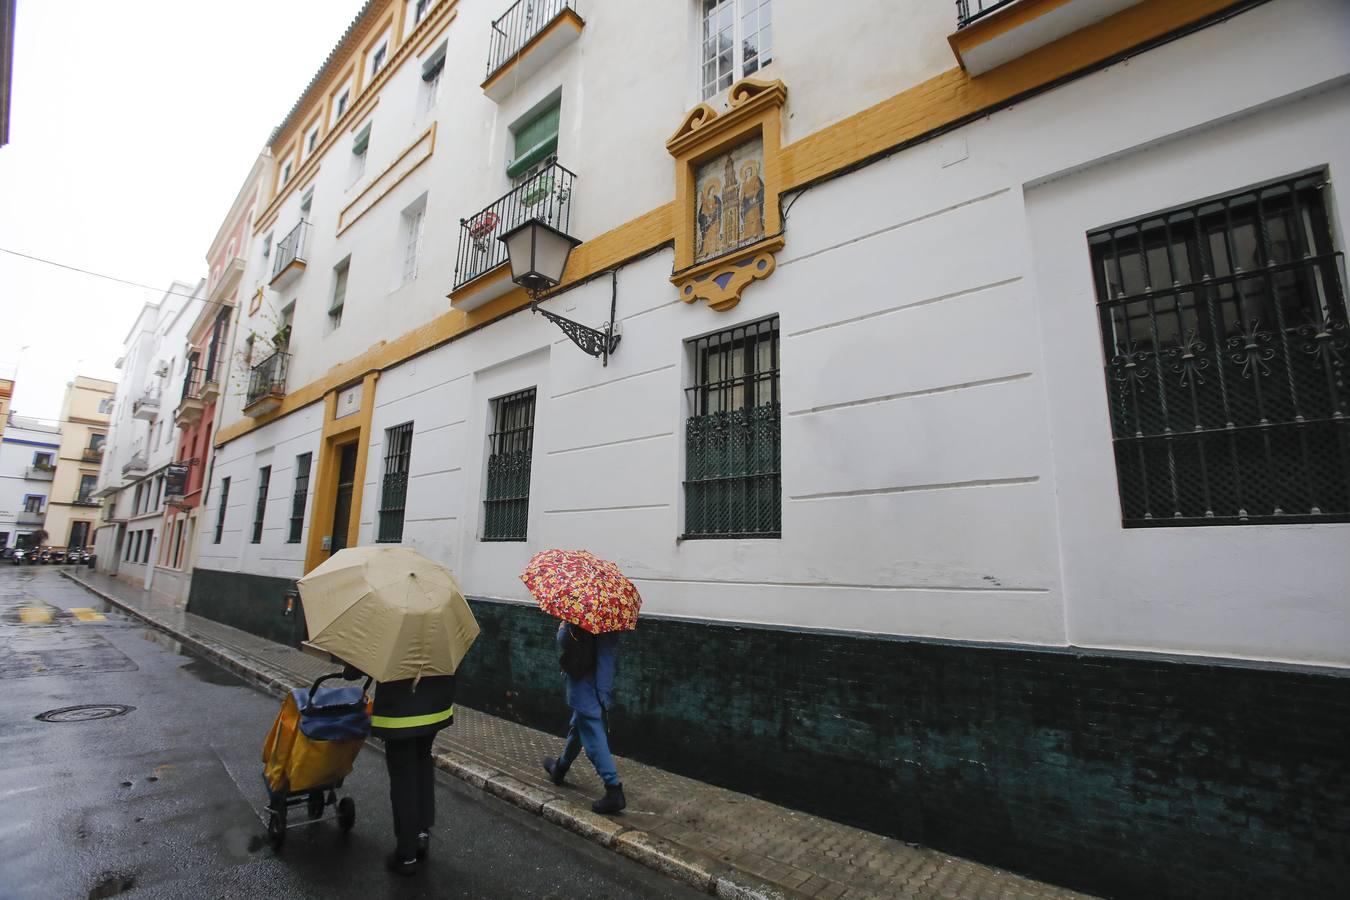 Ruta callejera: Sevilla en diez azulejos